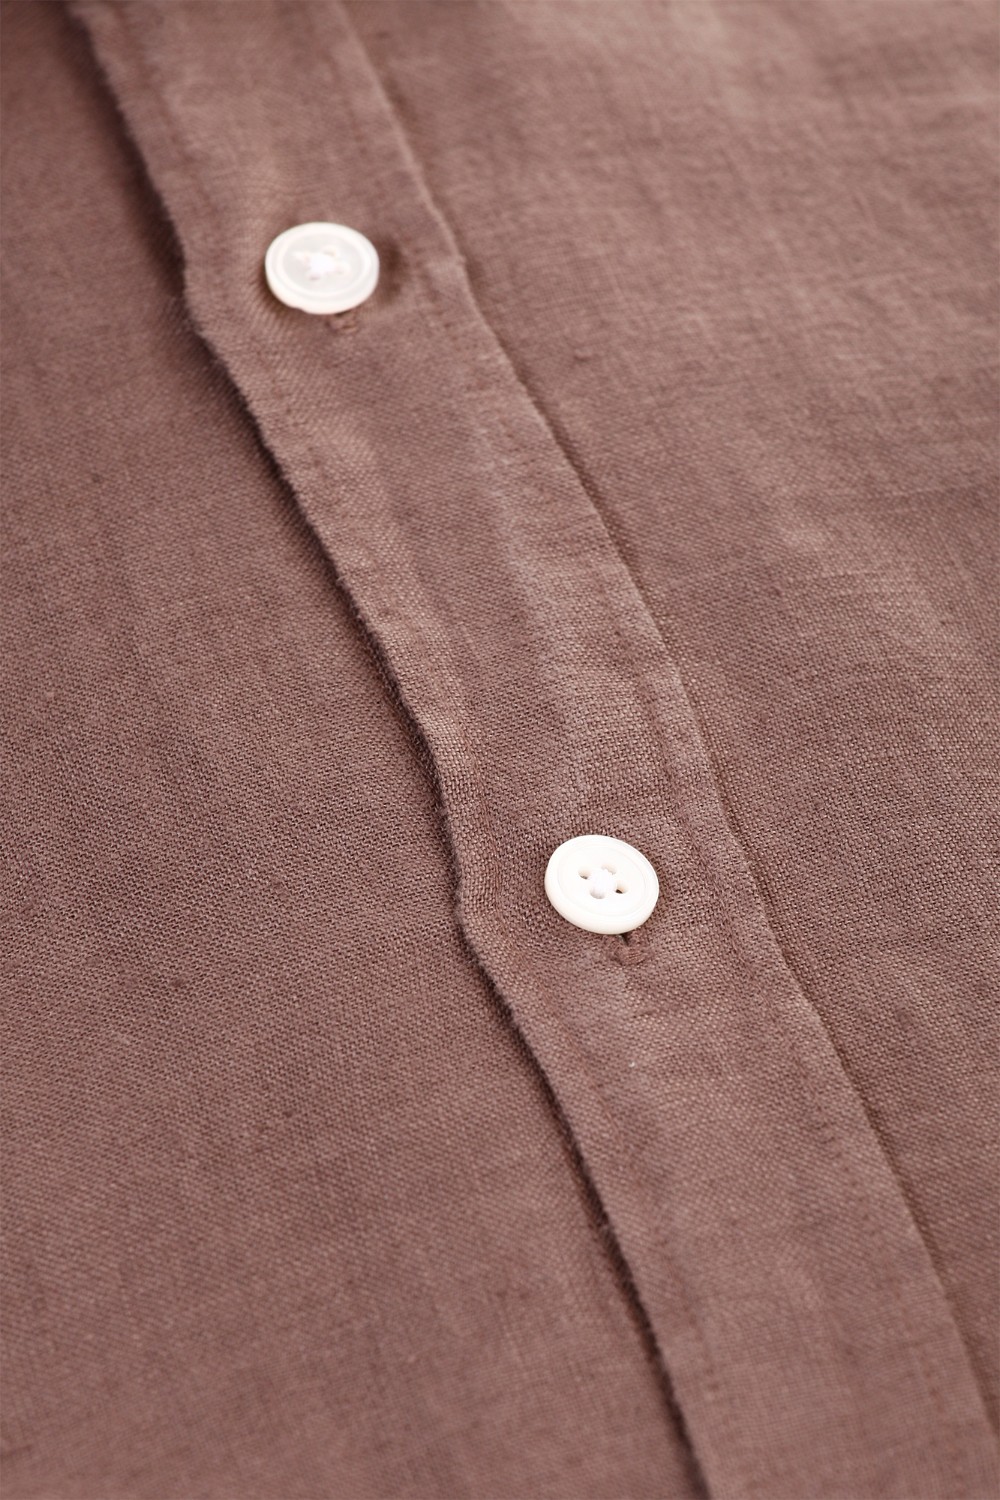 shop BAGUTTA Saldi Camicia: Bagutta camicia marrone di lino.
Colletto semi aperto.
Slim fit.
Composizione: 100% lino.
Made in Italy.. BERLINO EALT 11028-070 number 7381453